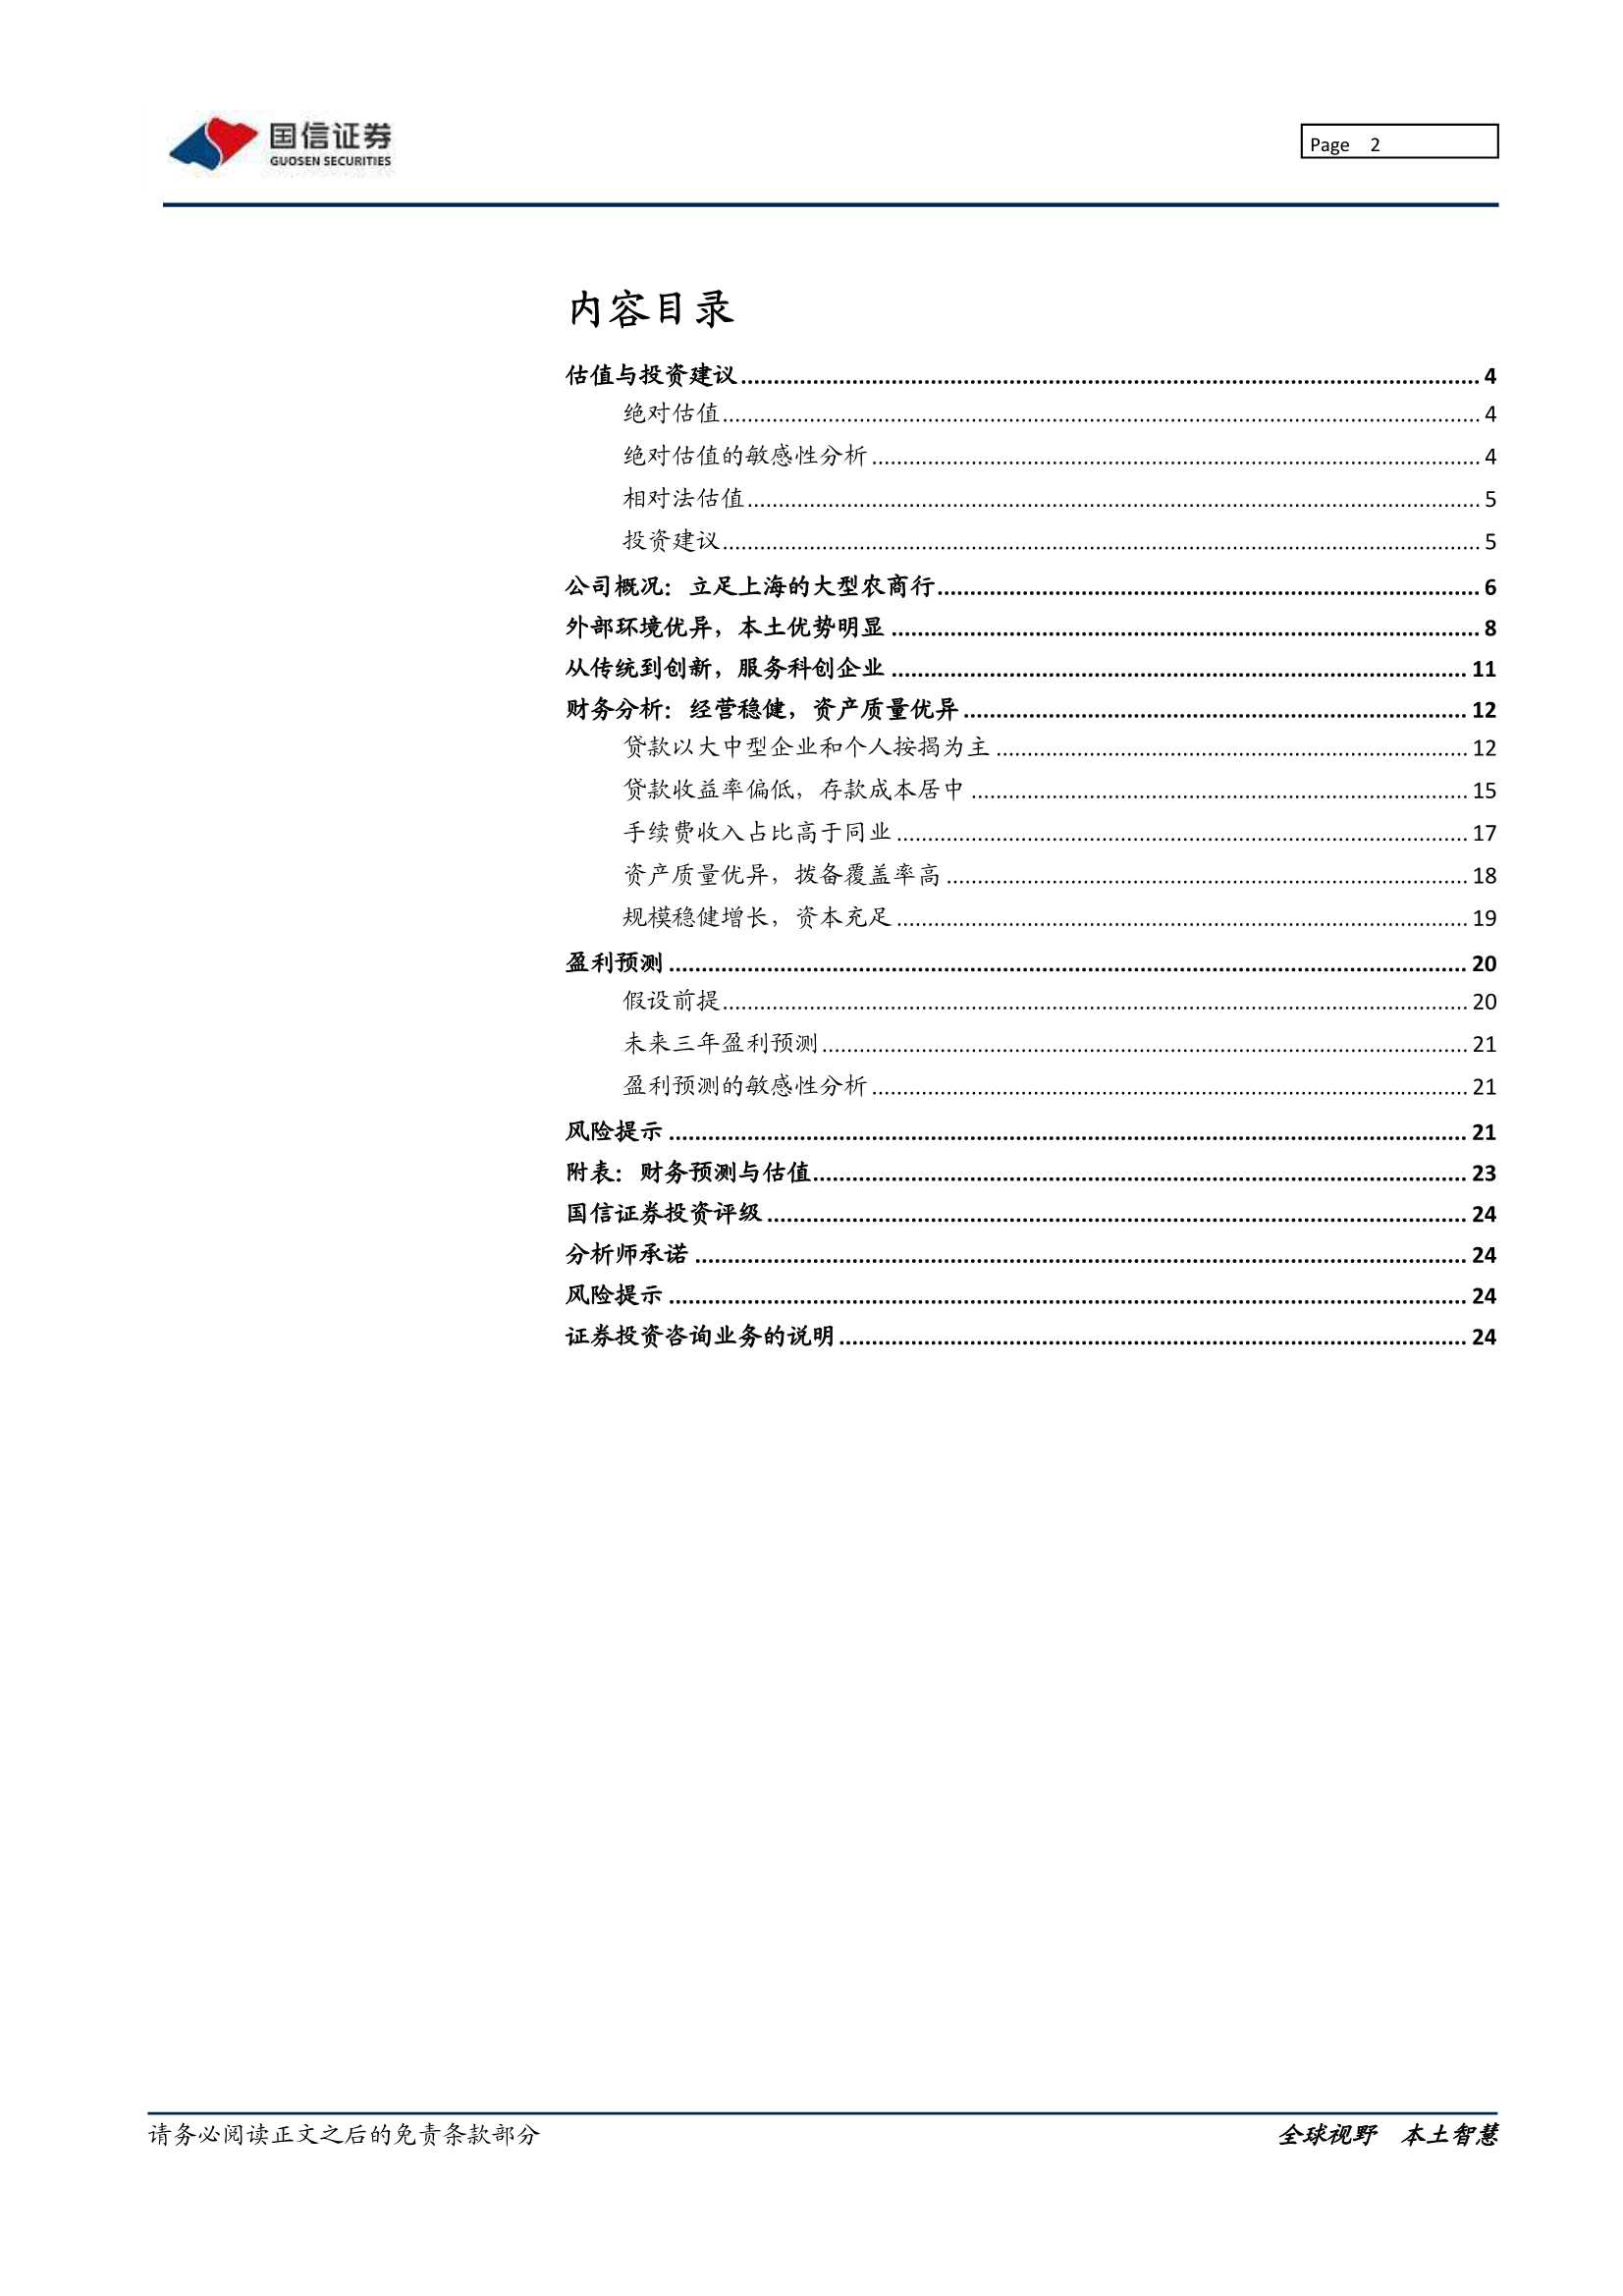 国信证券-沪农商行-601825-立足上海，彰显区域优势-20220124-25页